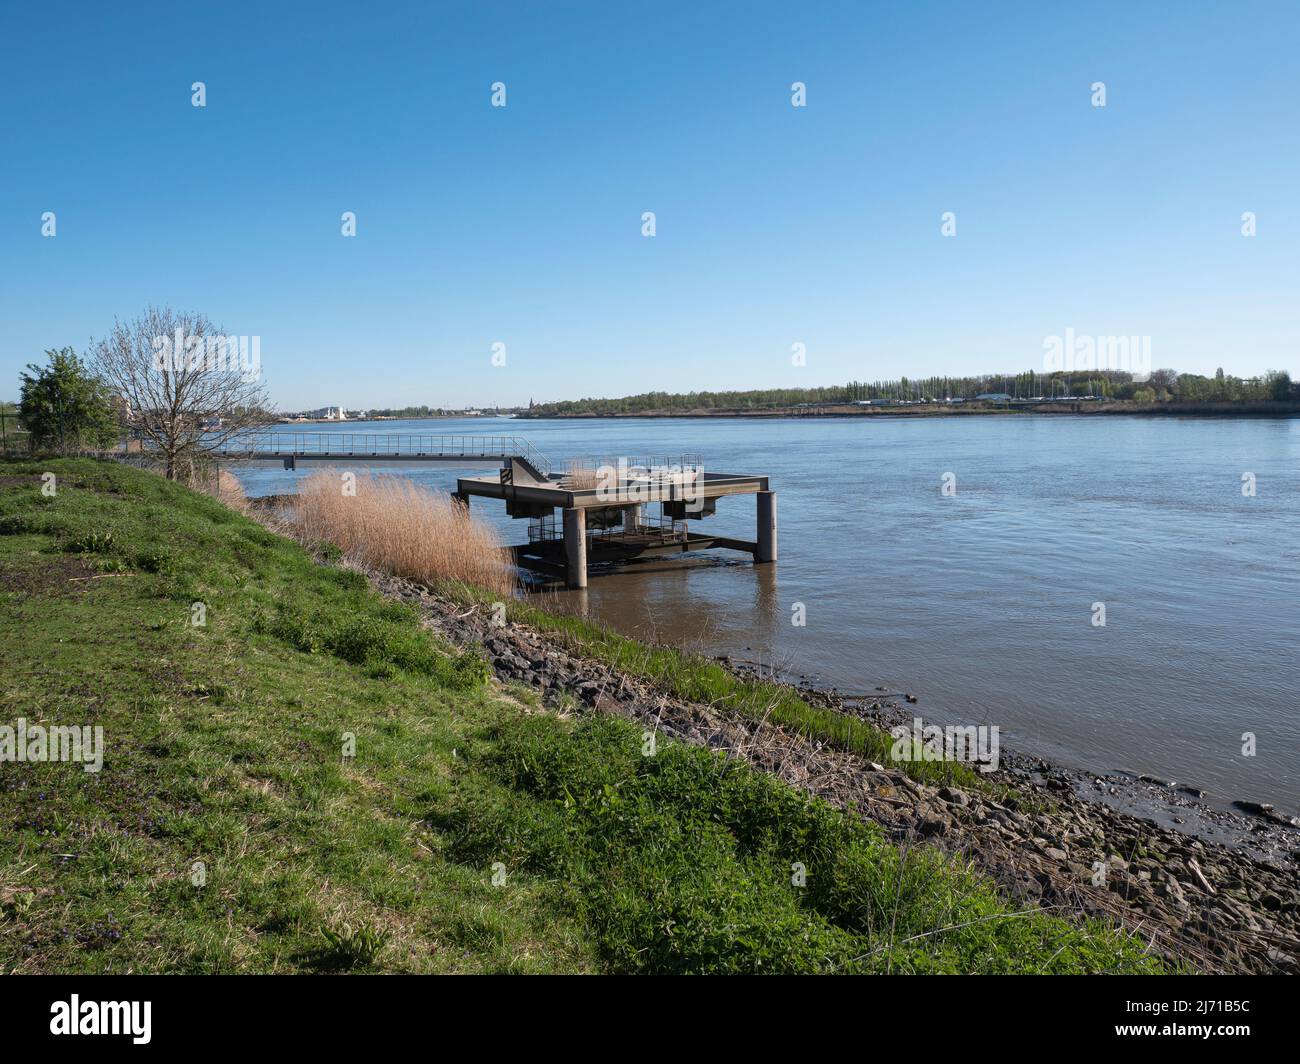 Photo de paysage avec vue sur la rivière Escaut depuis le village de Kruibeke situé dans le nord-est de la province belge de Flandre orientale Banque D'Images